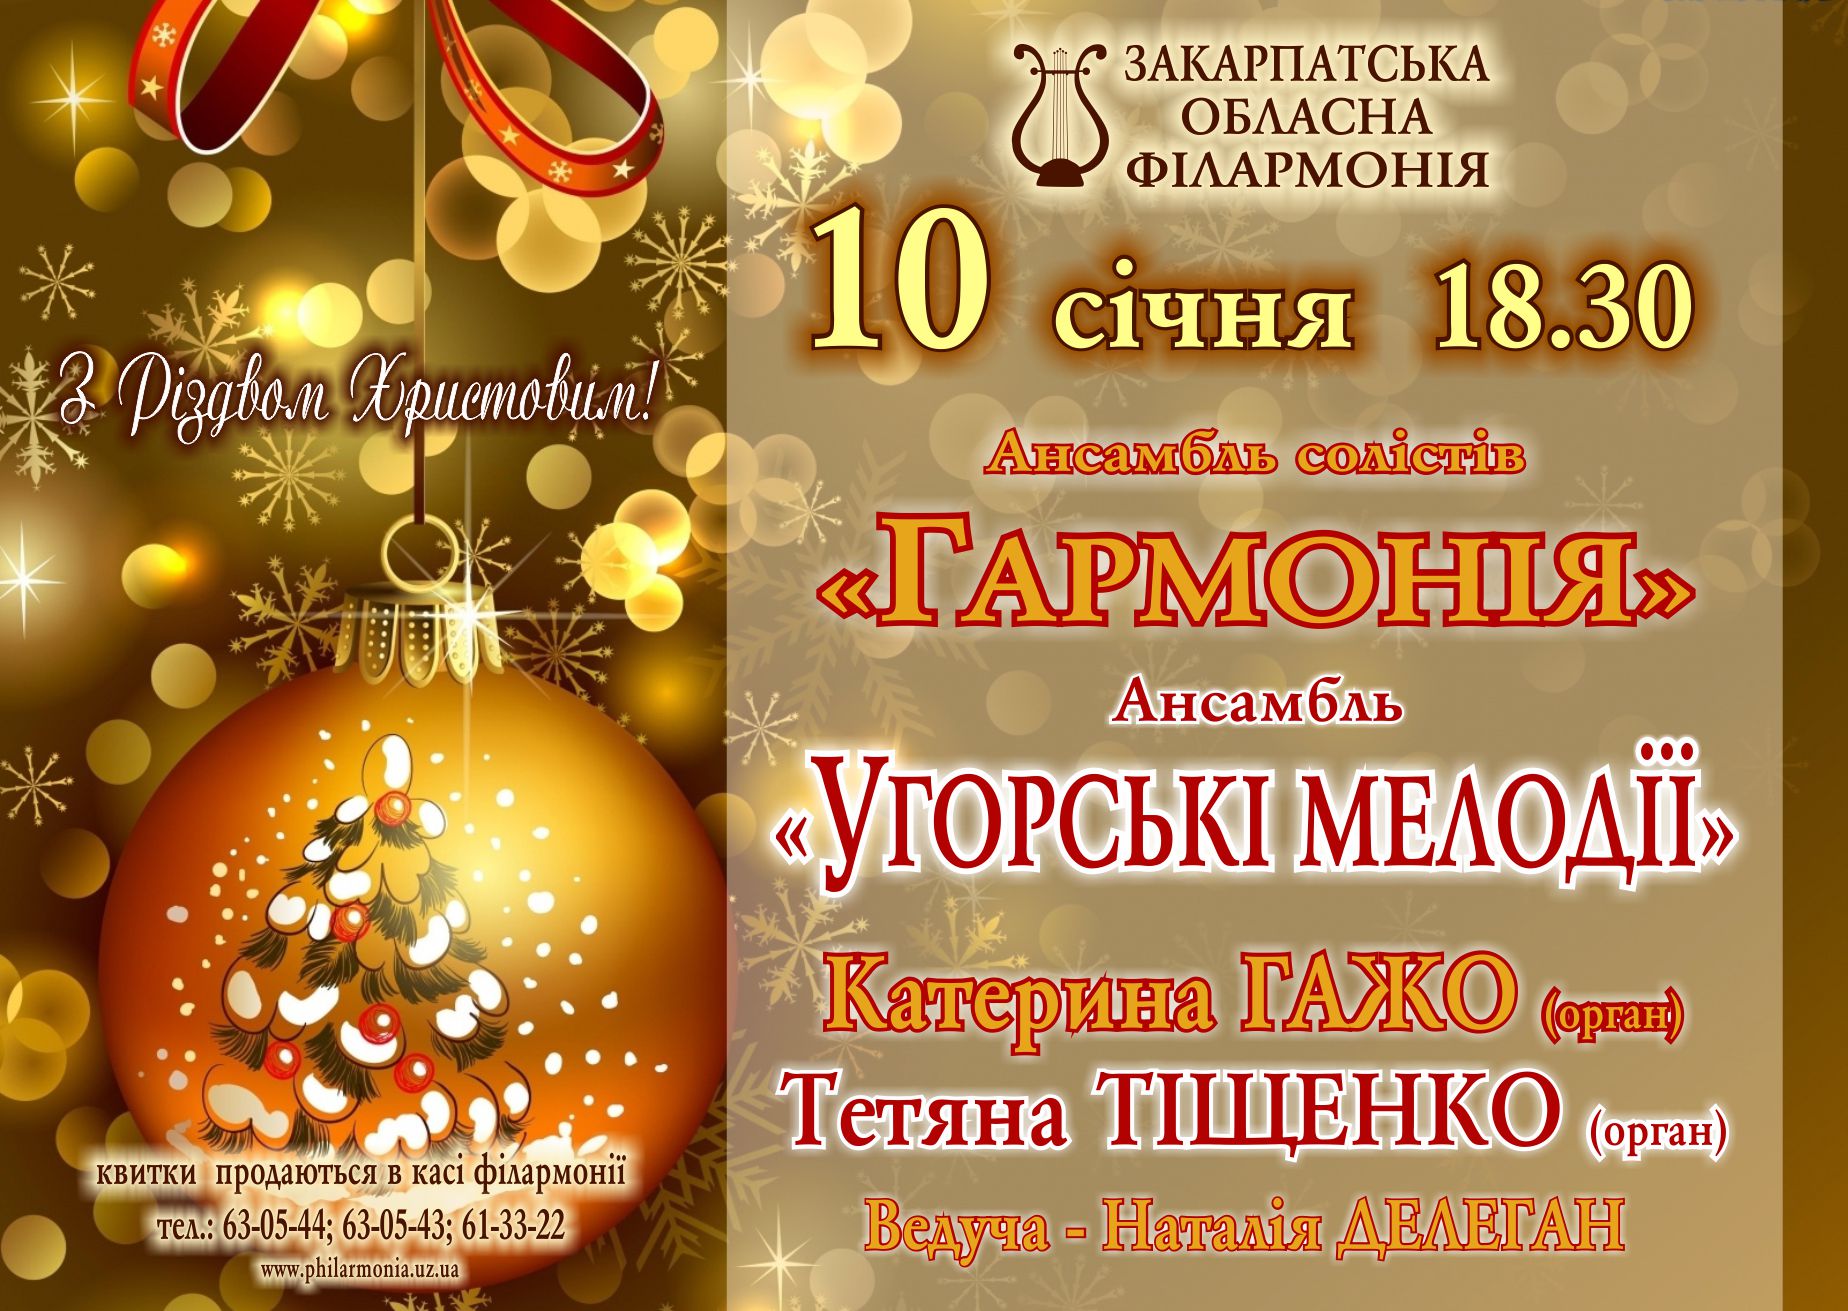 В Ужгороді багатомовно колядками і чардашами у філармонії вітатимуть "З Різдвом Христовим"